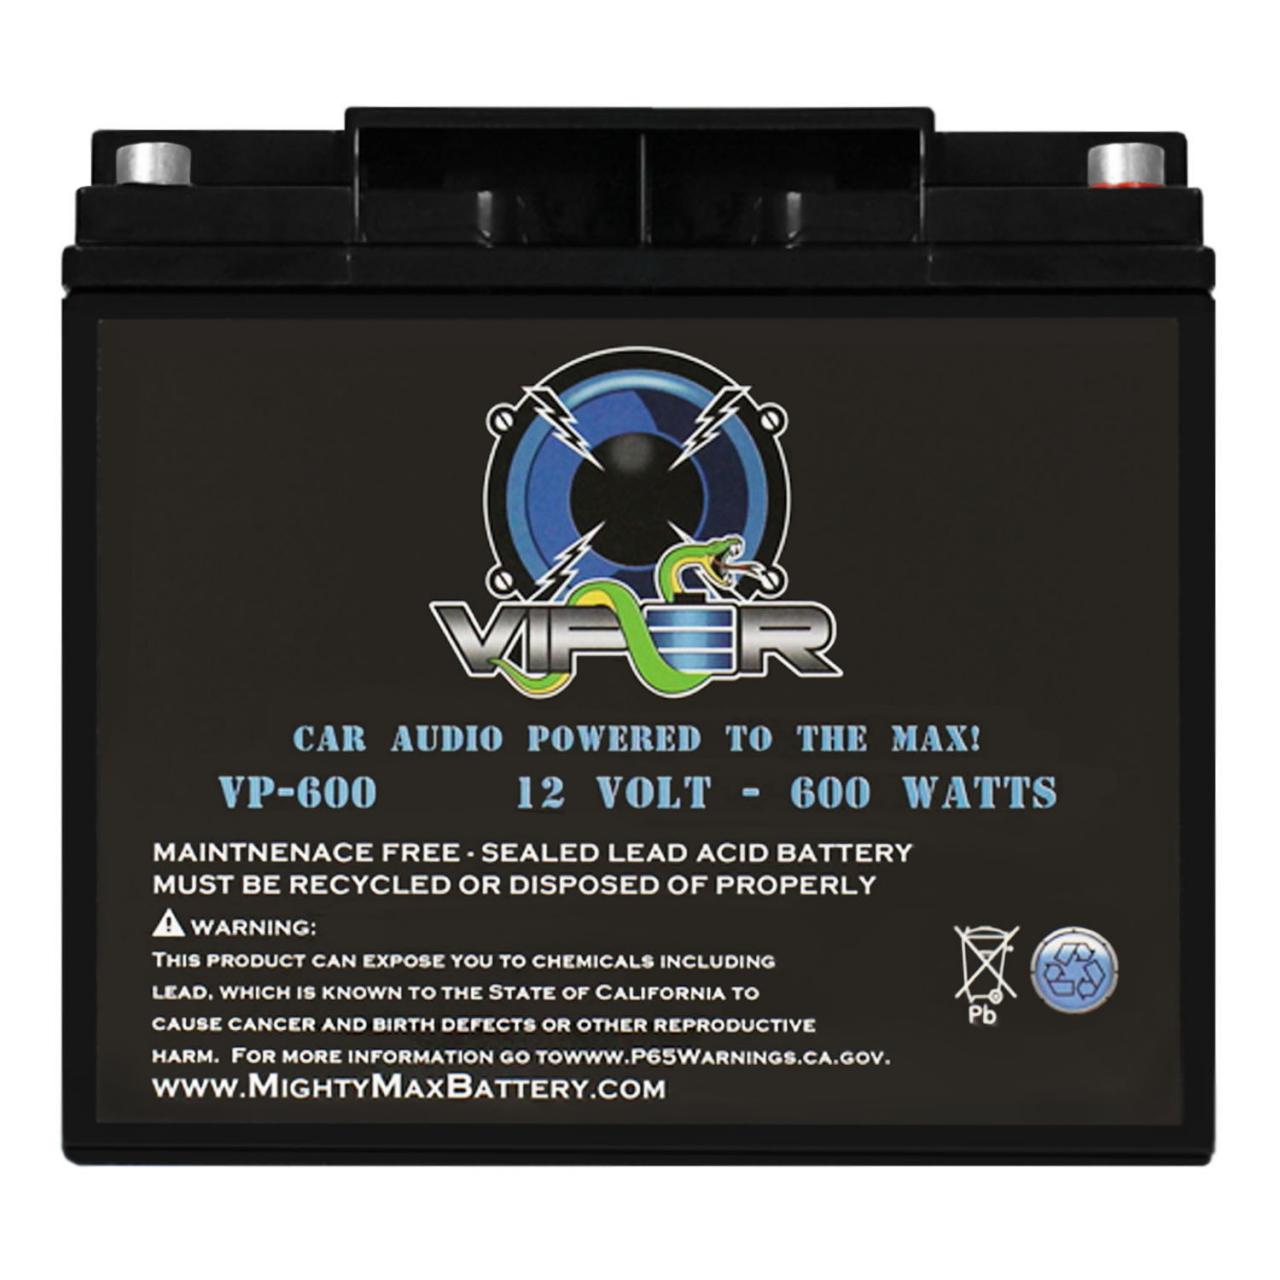 Mighty Max Battery Viper VP-600 12V 600 Watt